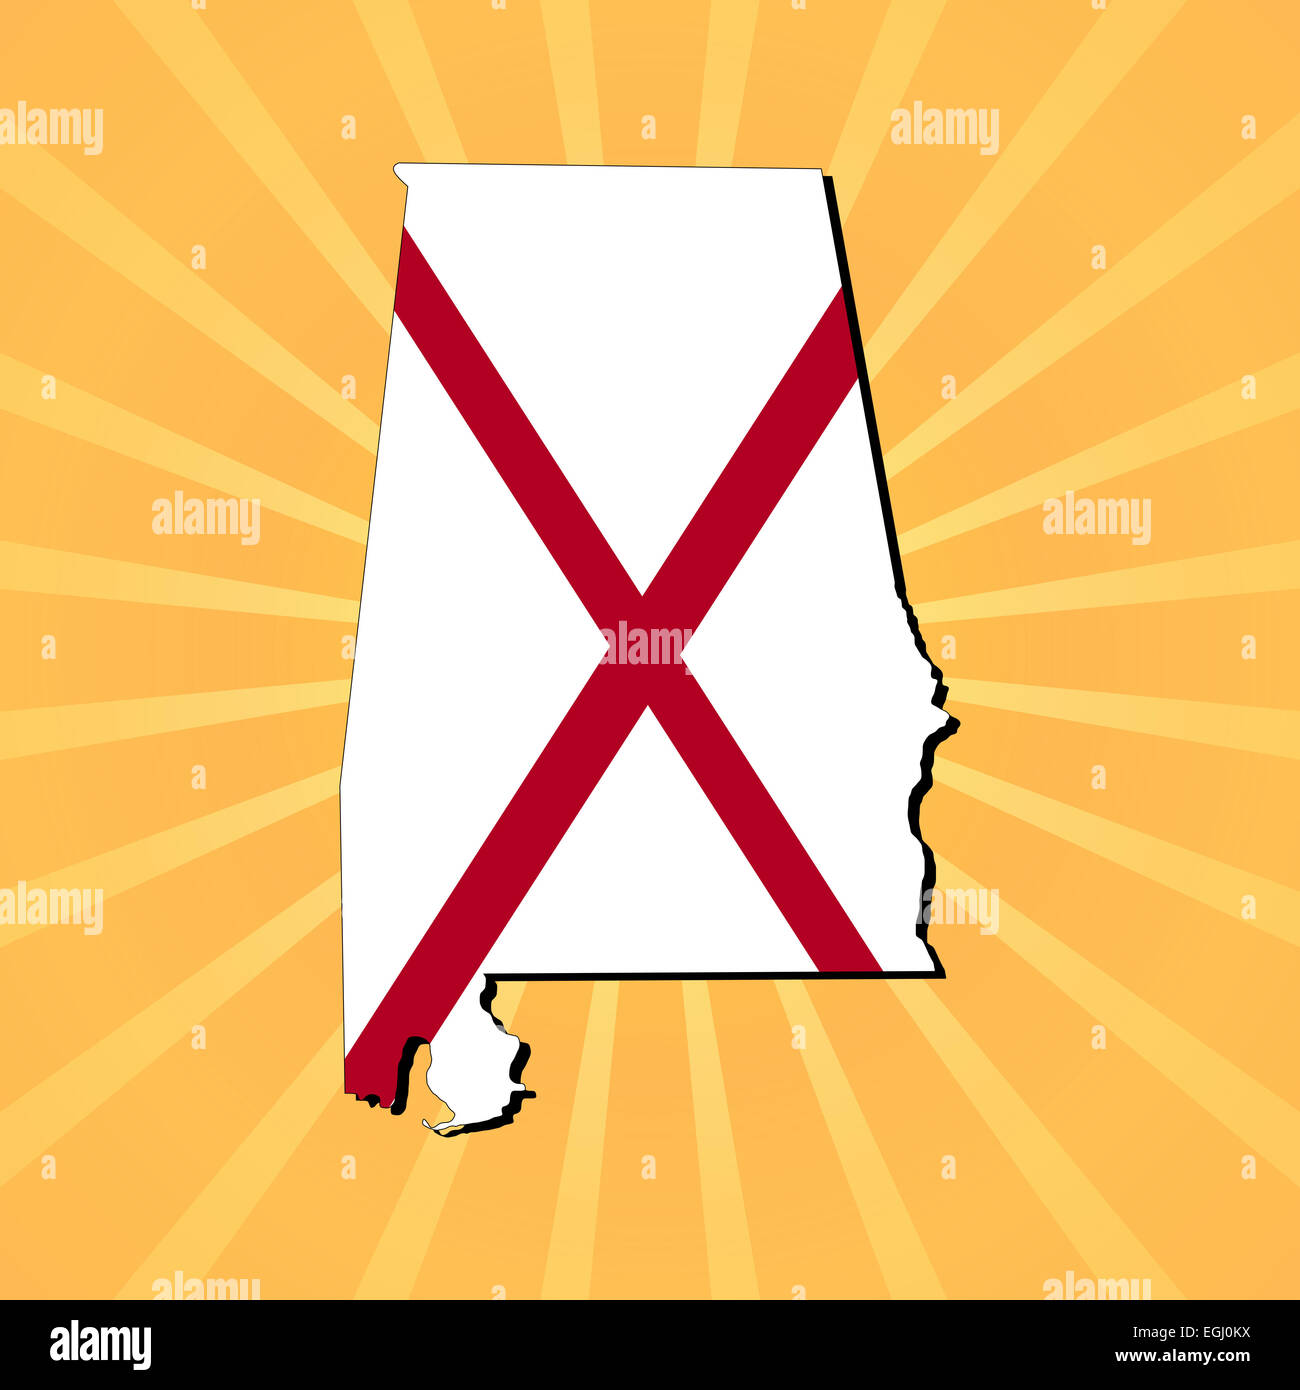 Alabama carte drapeau sur la solarisation illustration Banque D'Images